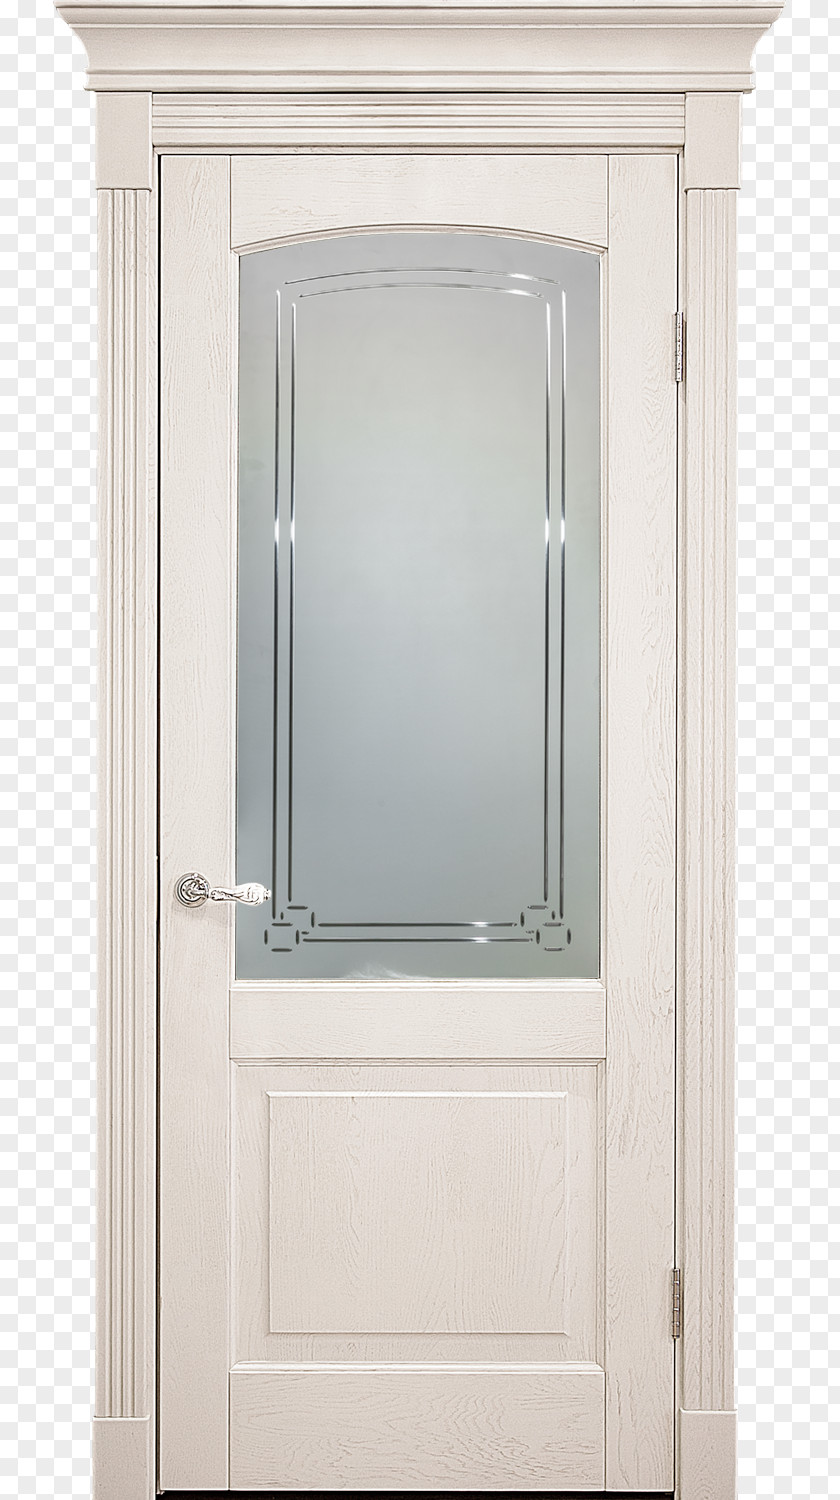 Doors Bathroom Cabinet Window Cupboard Door Wood Stain PNG